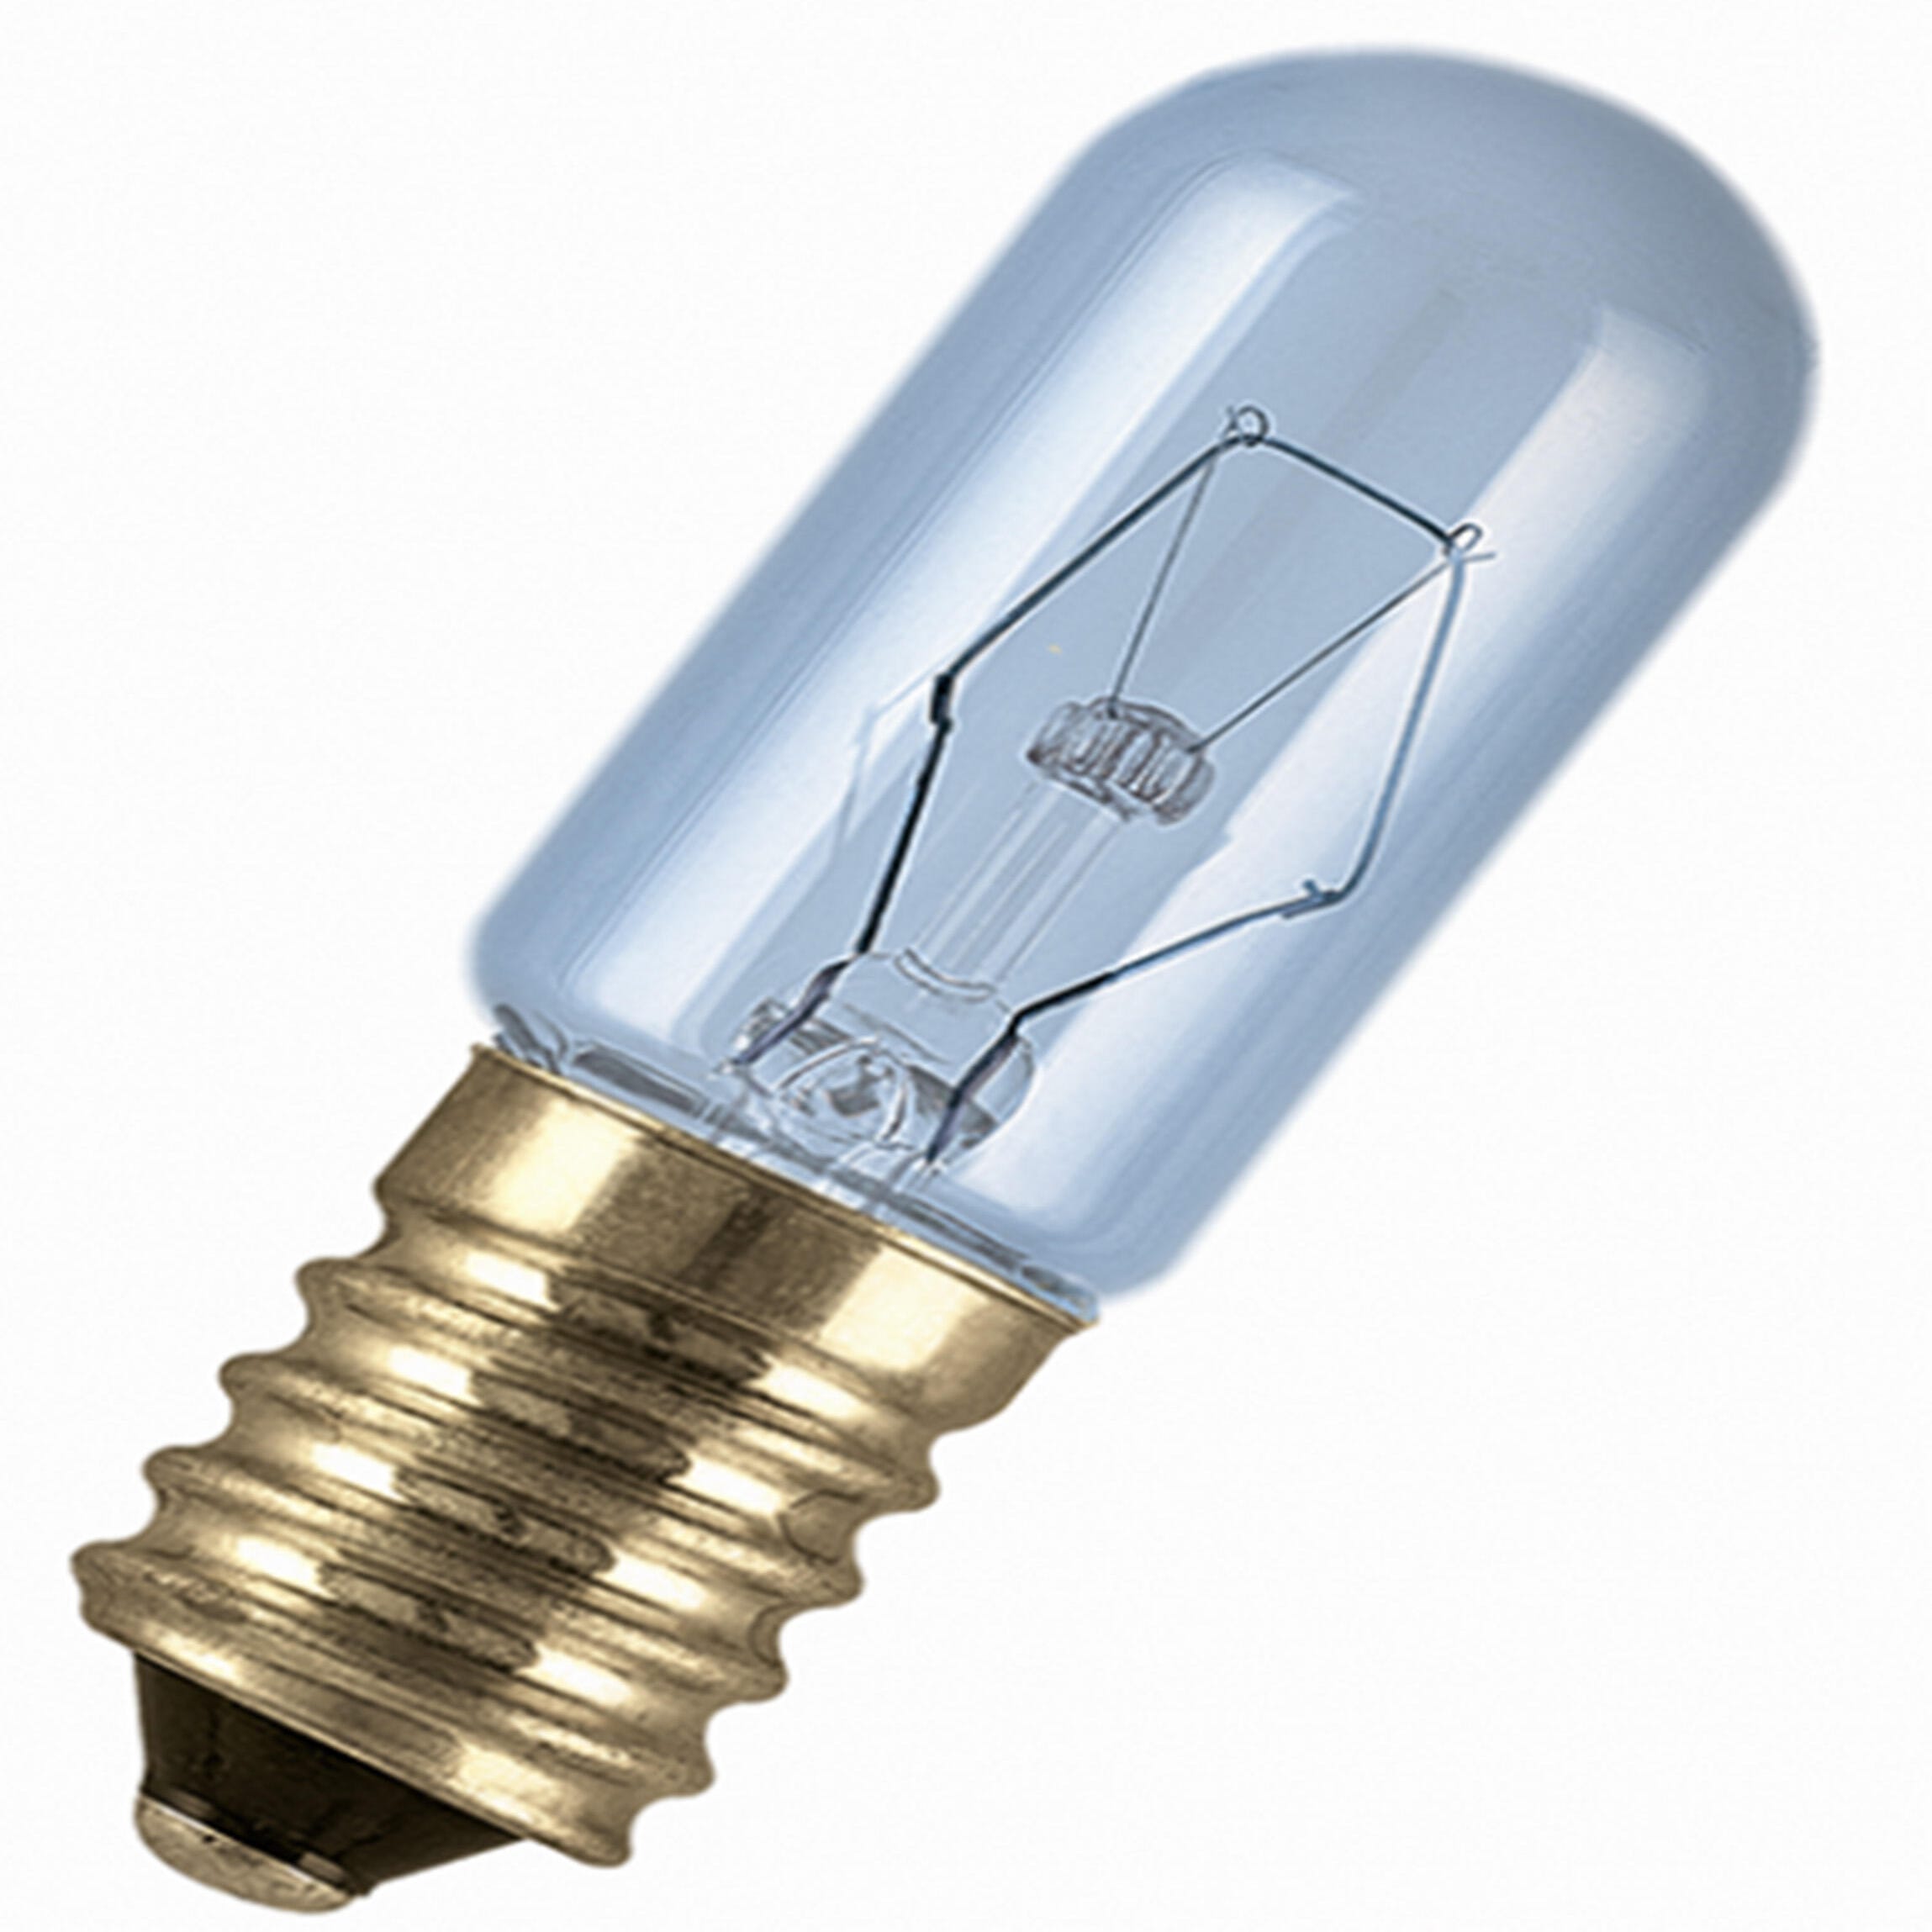 E14 Sel Lampe Globe Ampoule,15W Léger Ampoules,240V Réfrigérateur Four